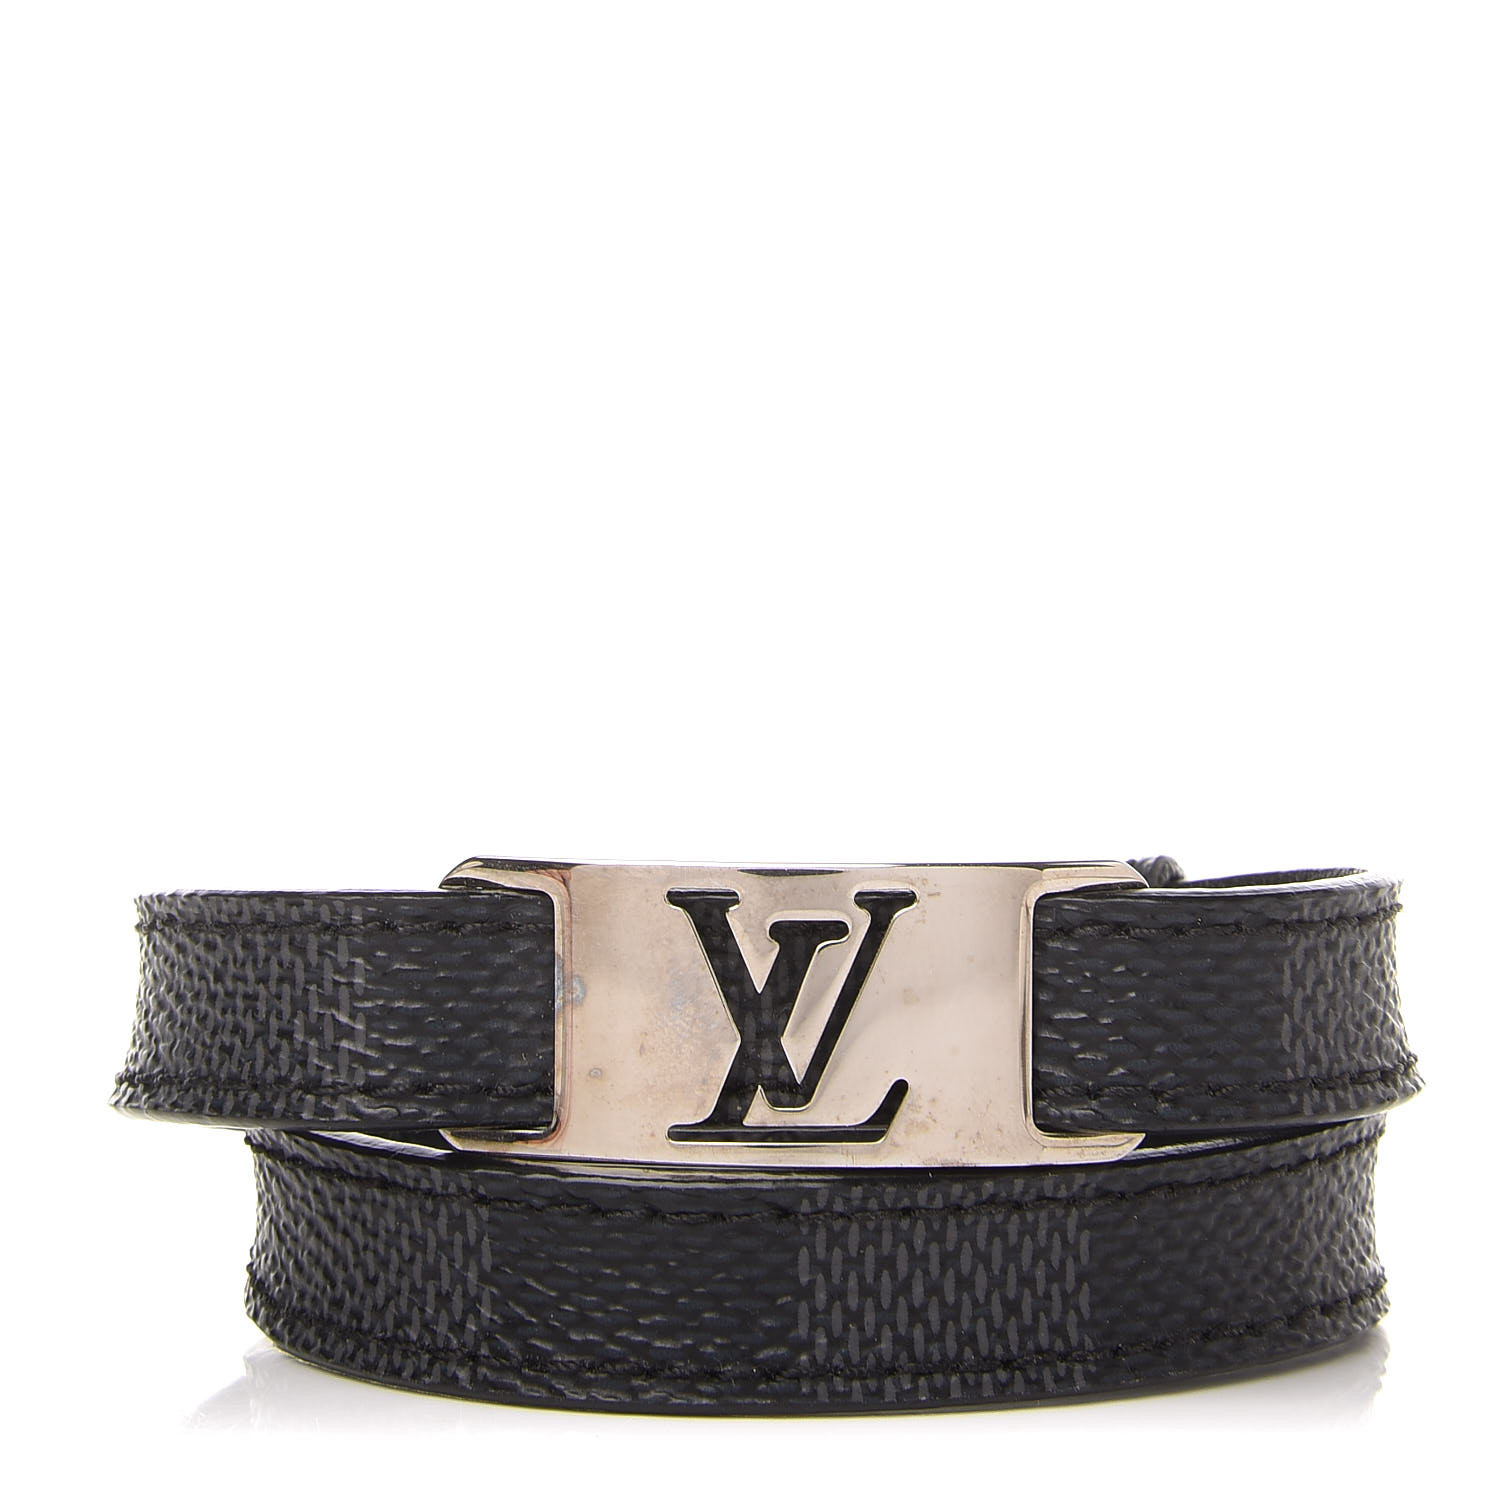 Louis Vuitton Sign It Bracelet Reviews